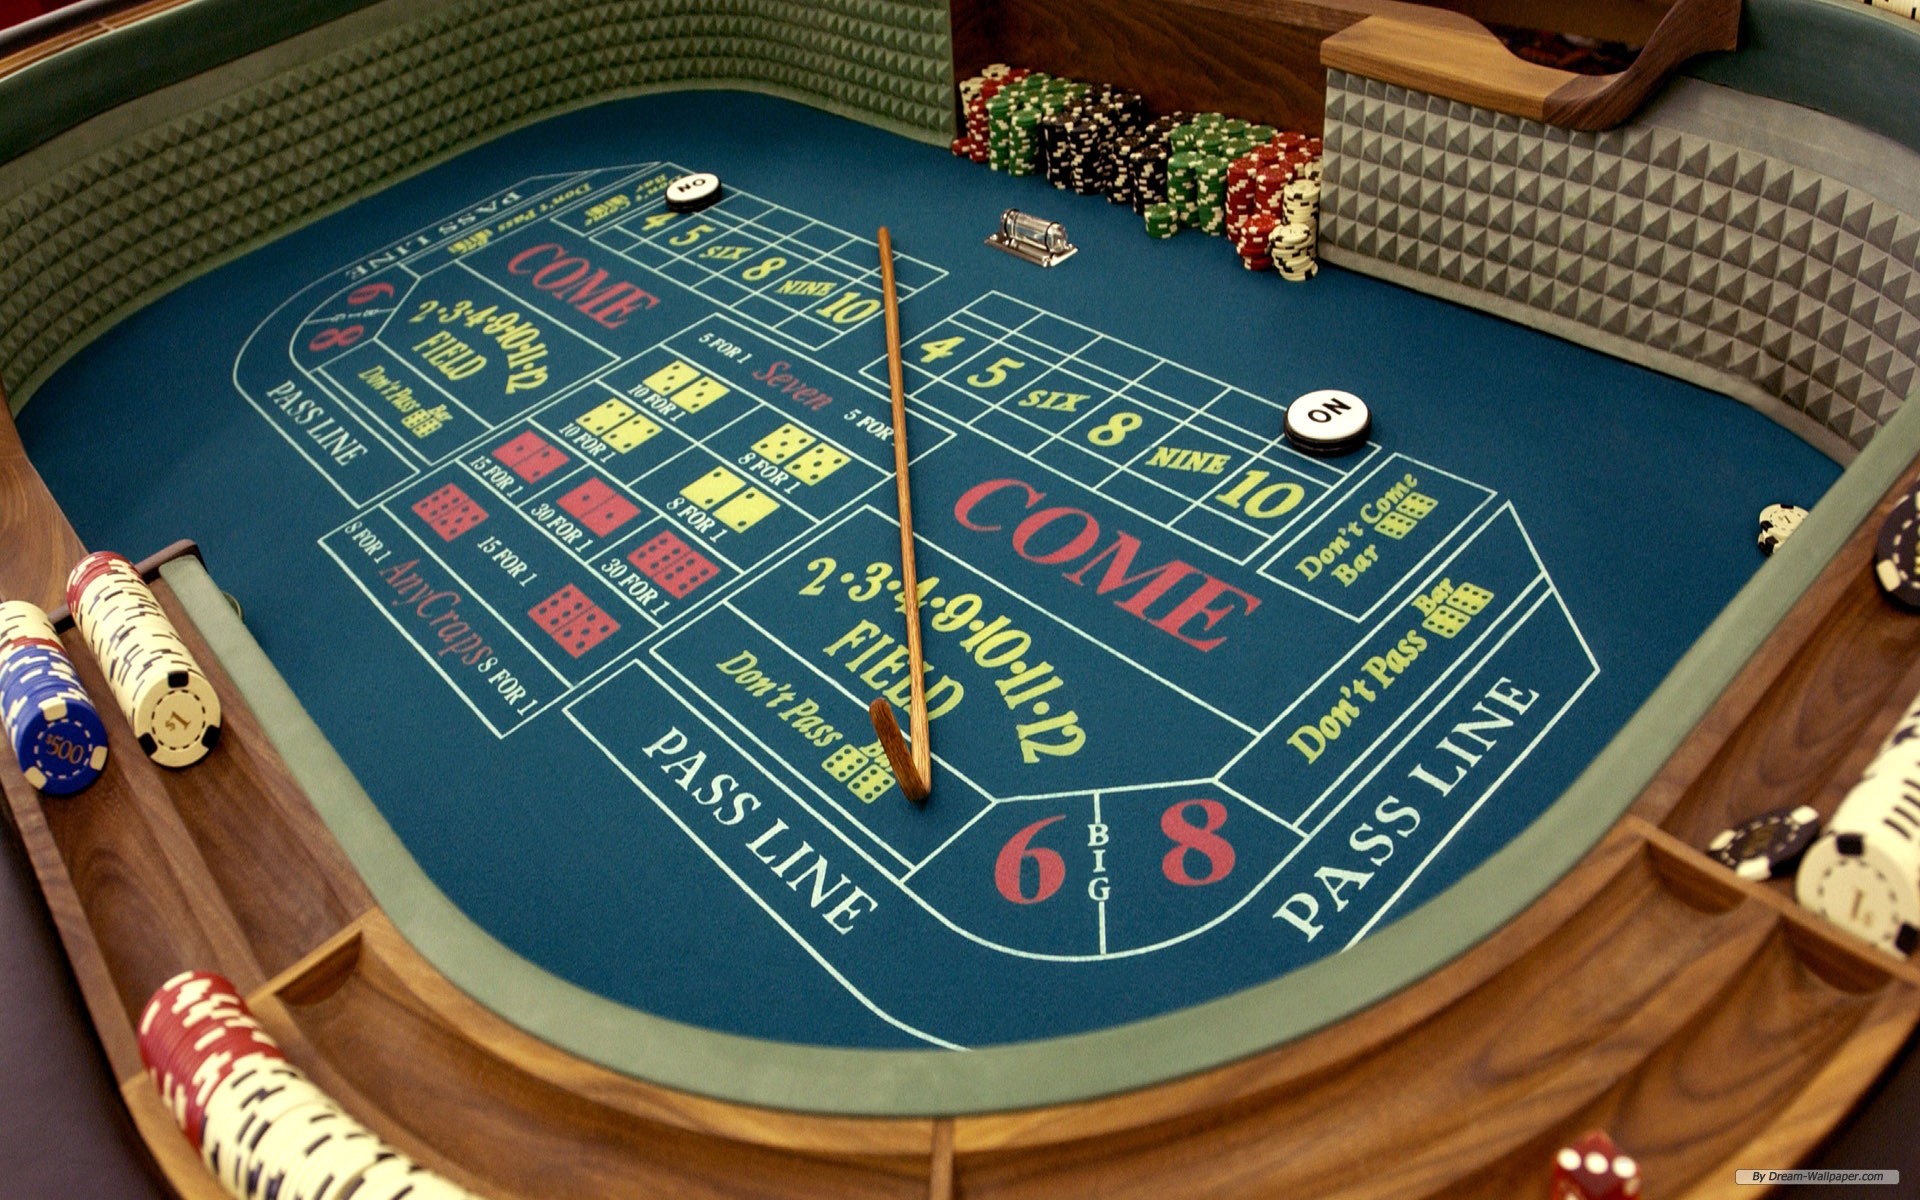 Best Online Casino Bonuses 2020 - No Deposit Bonus Codes